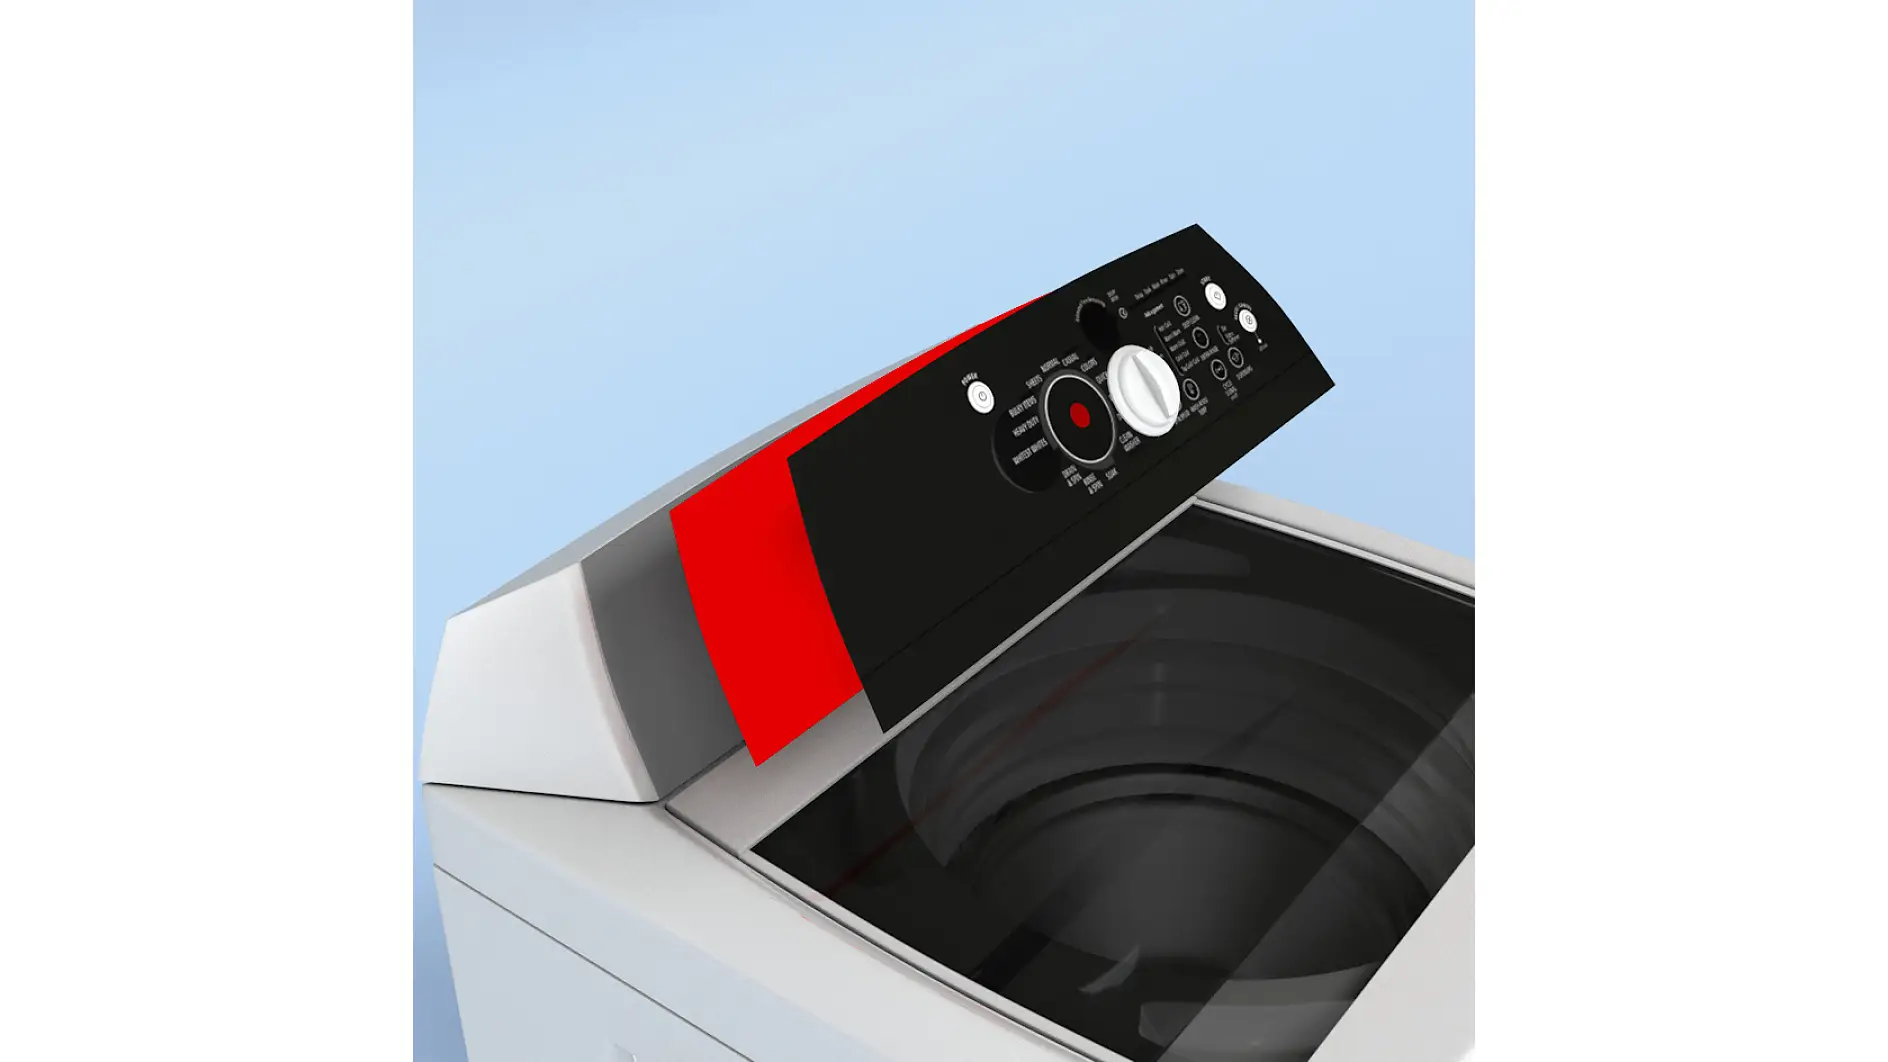 Comutatoarele cu membrană sunt montate pe o maşină de spălat rufe prin utilizarea unei benzi adezive